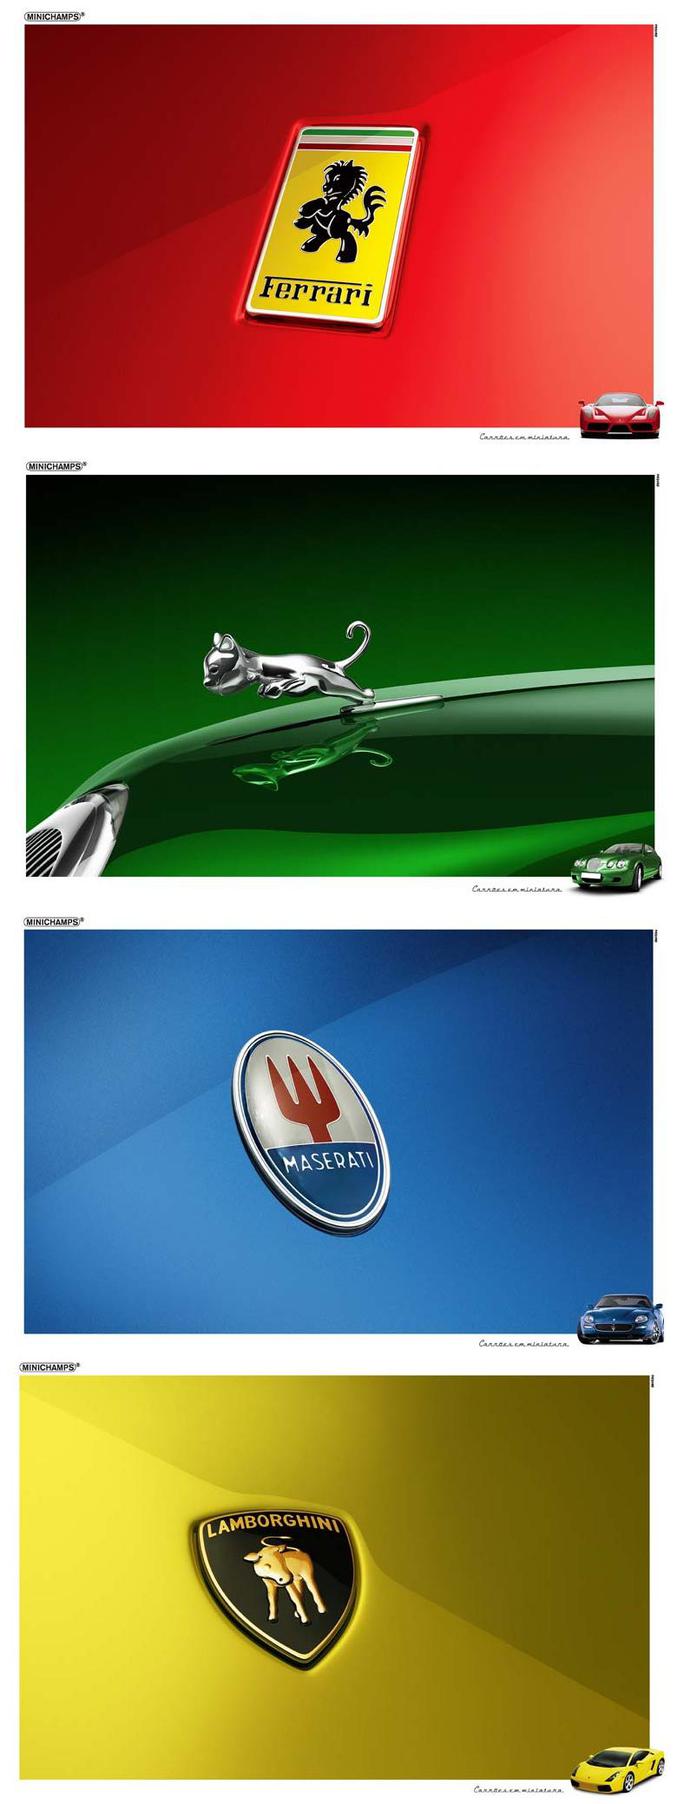 Les logos de grandes firmes de voitures à leurs débuts.